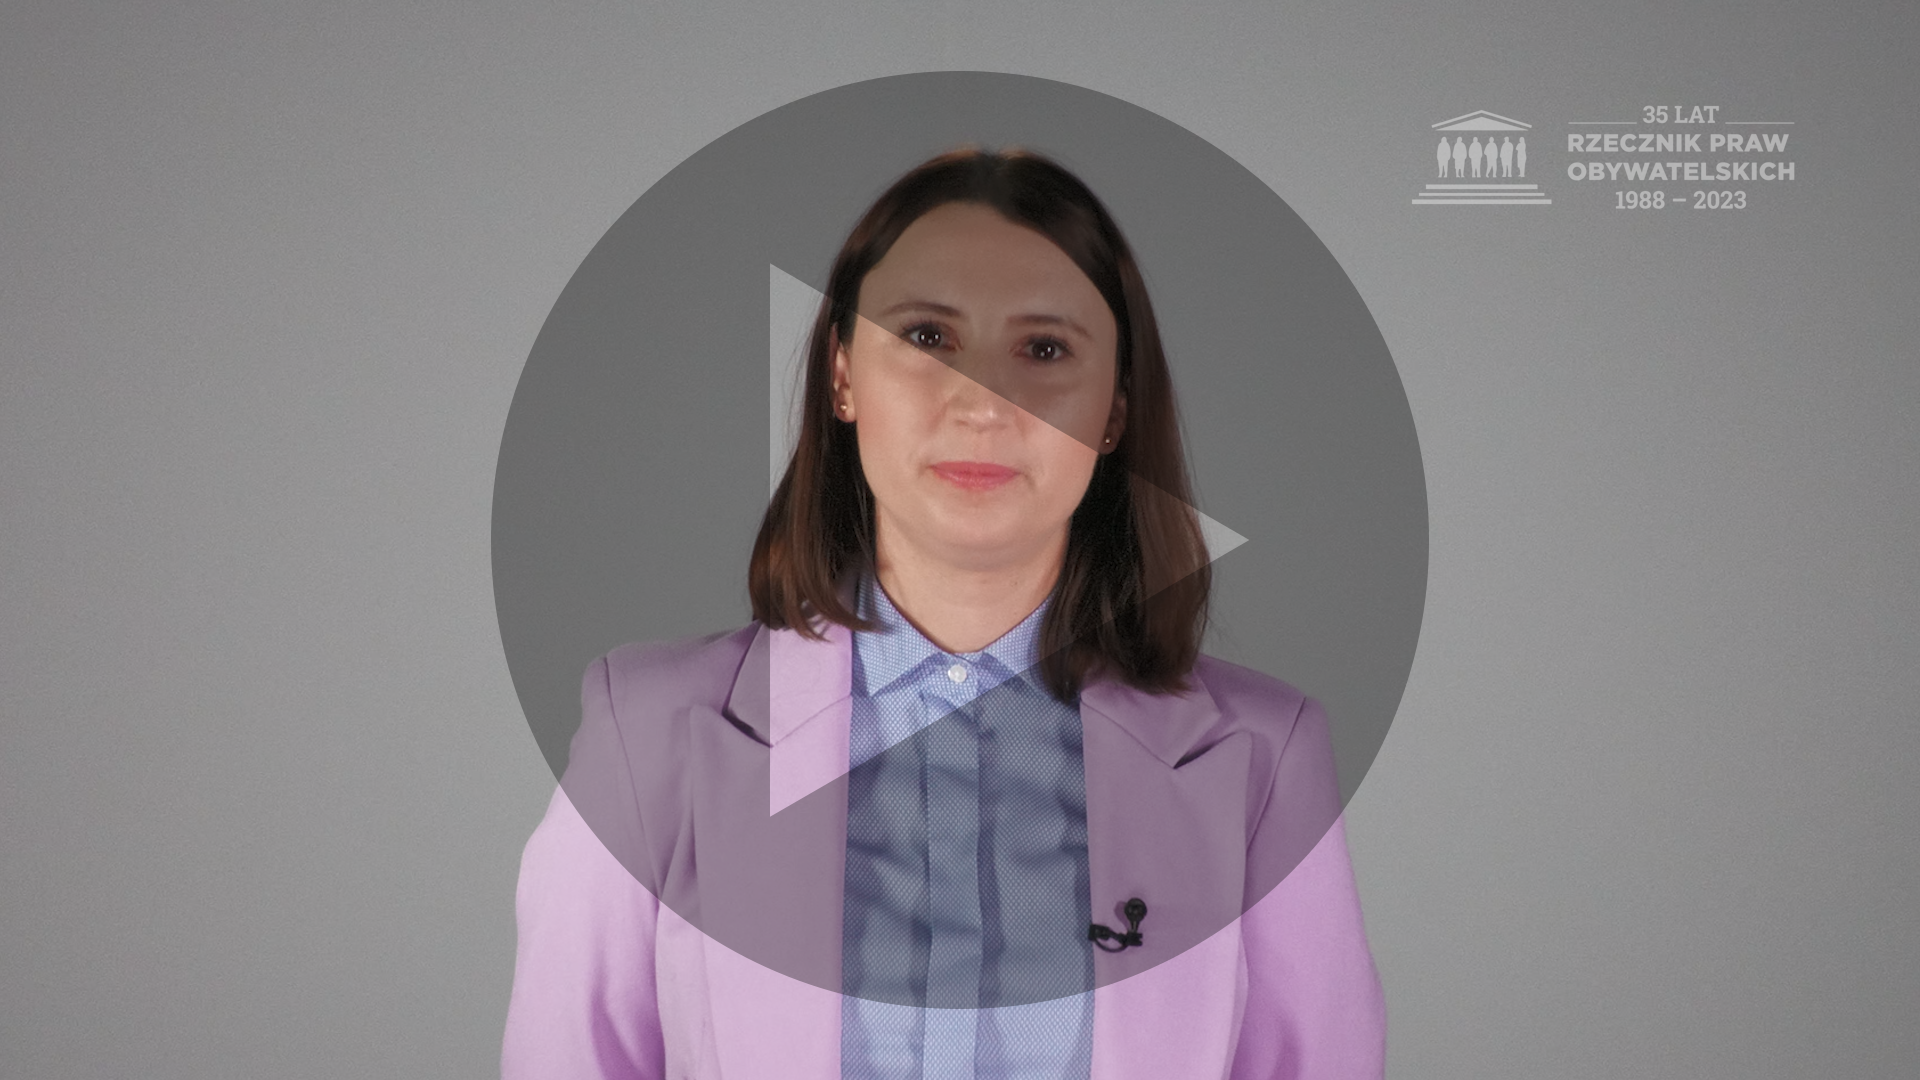 Kadr z nagrania przedstawiający Monikę Wiszyńską Rakowską z naniesionym symbolem odtwarzania wideo - trójkątem w kole